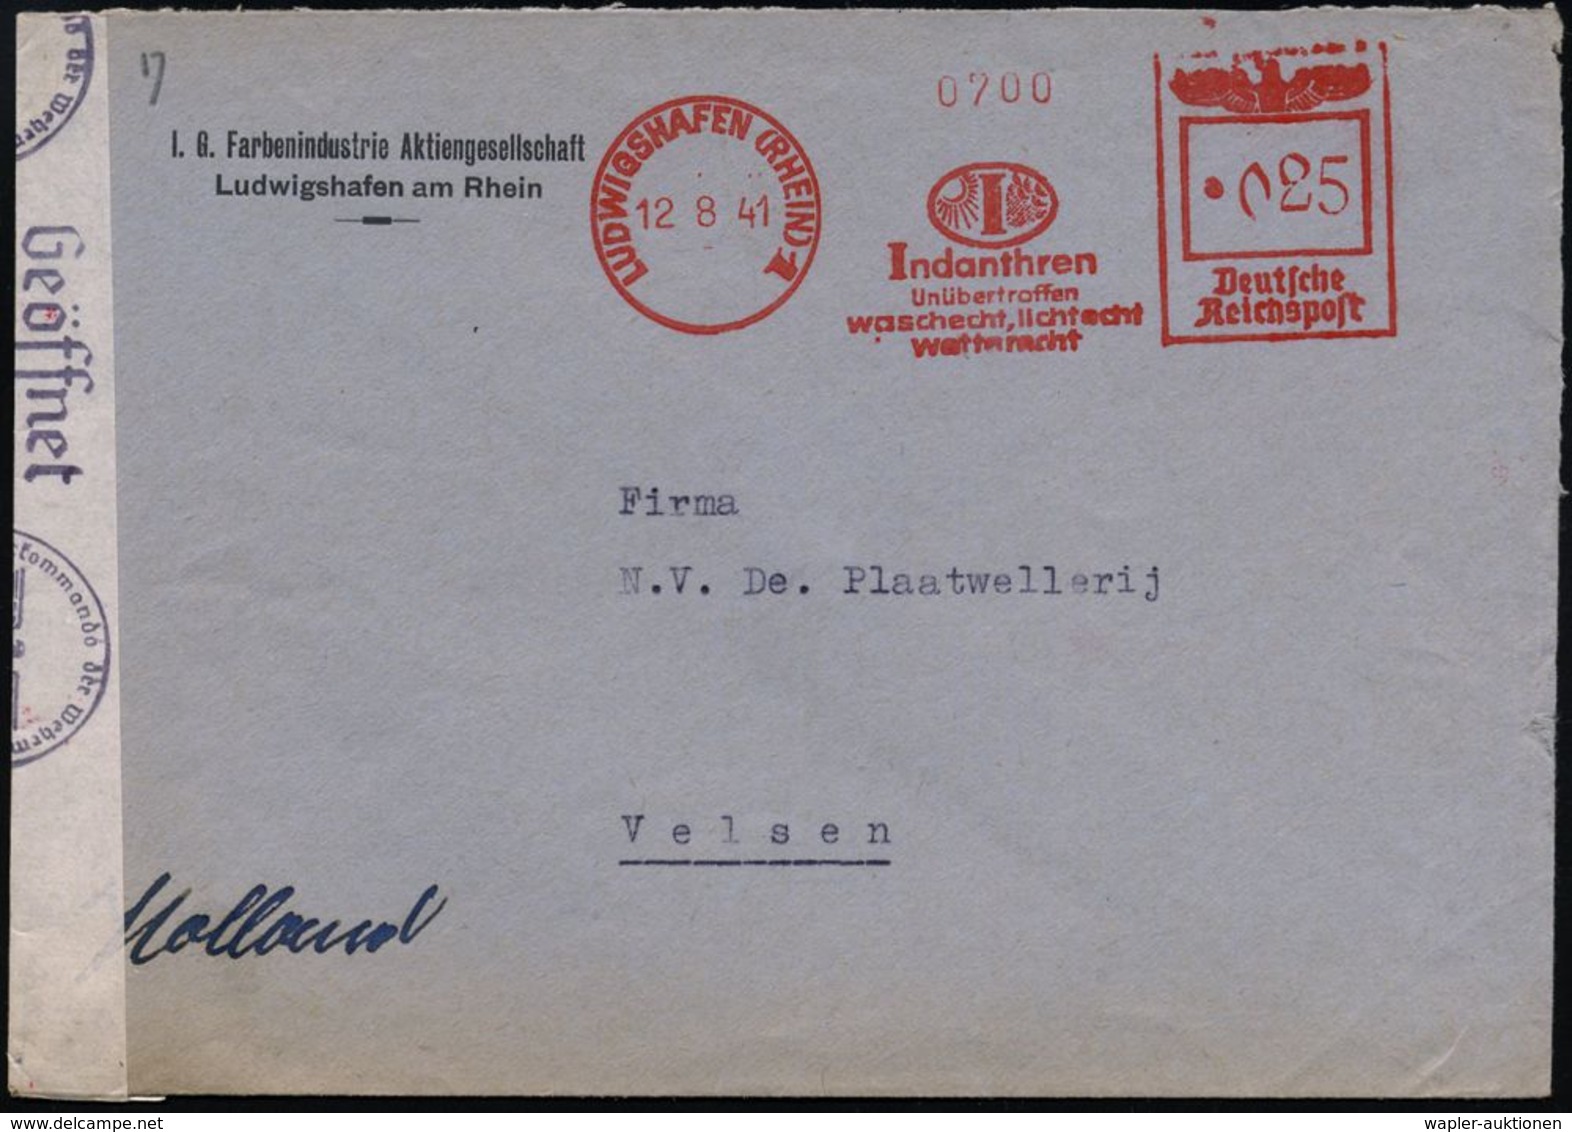 I.-G.-FARBEN INDUSTRIE, TOCHTERFIRMEN & NACHFOLGER : LUDWIGSHAFEN (RHEIN)1/ Indanthren/ ..lichtecht/ Wetterfest 1941 (12 - Chimie